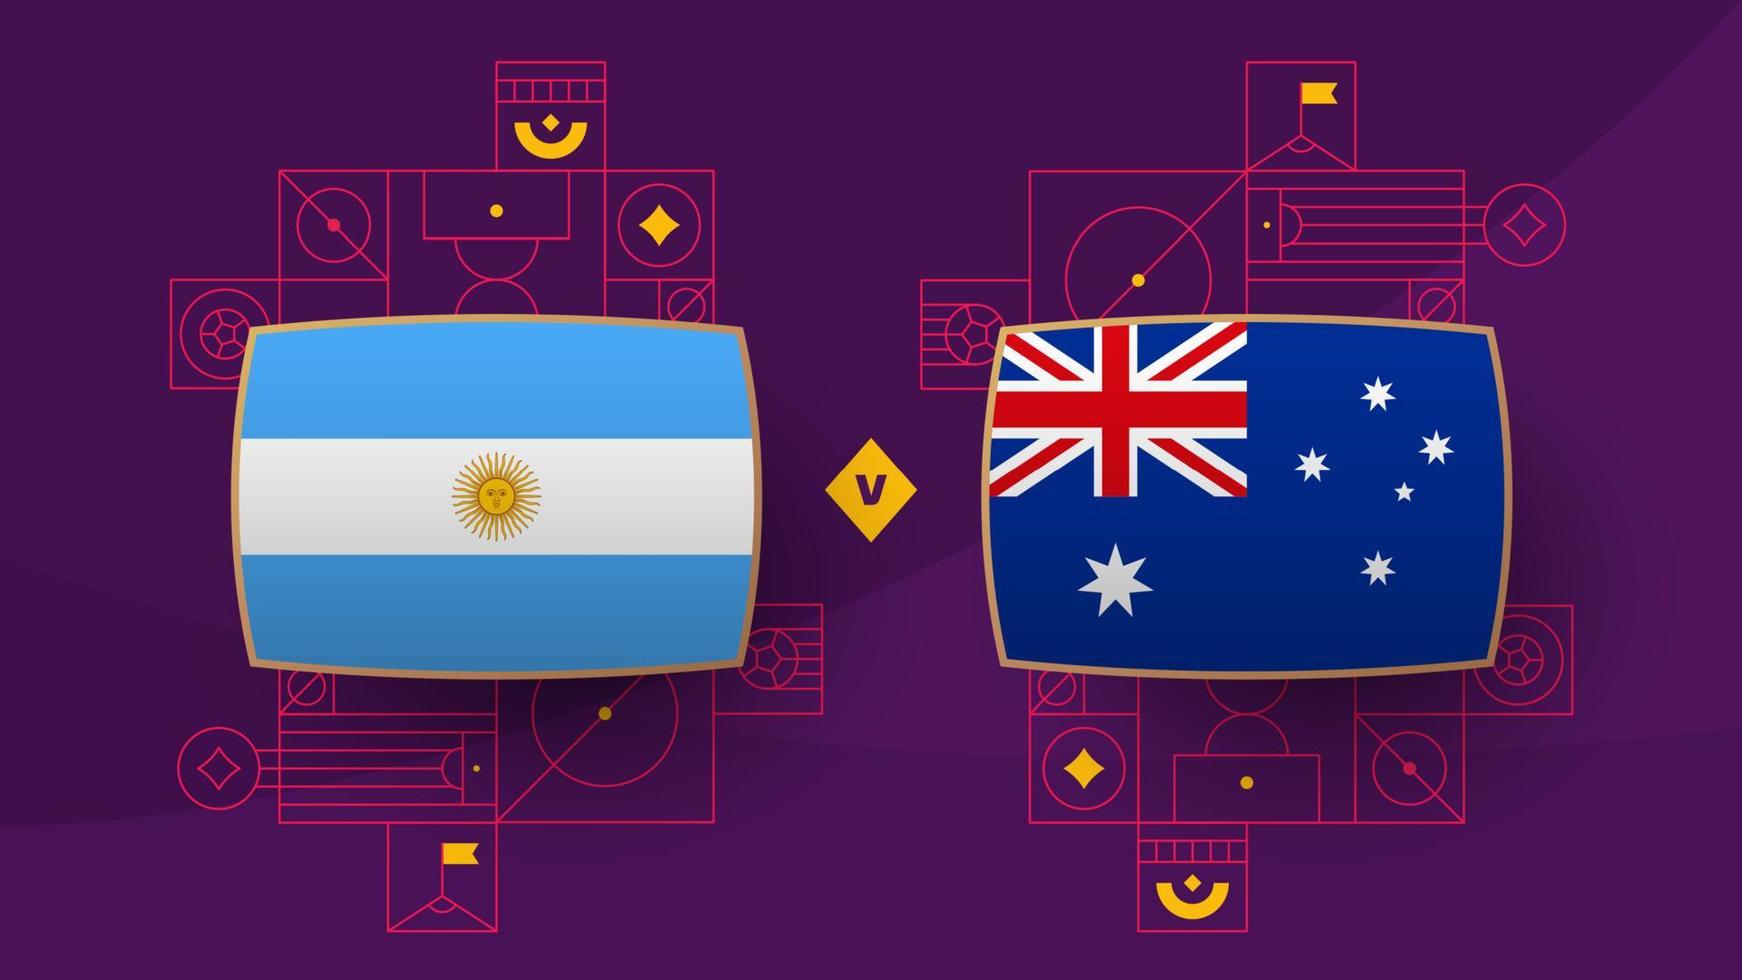 Argentinië vs Australië playoff ronde van 16 bij elkaar passen Amerikaans voetbal 2022. 2022 wereld Amerikaans voetbal kampioenschap bij elkaar passen versus teams intro sport achtergrond, kampioenschap wedstrijd poster, vector illustratie